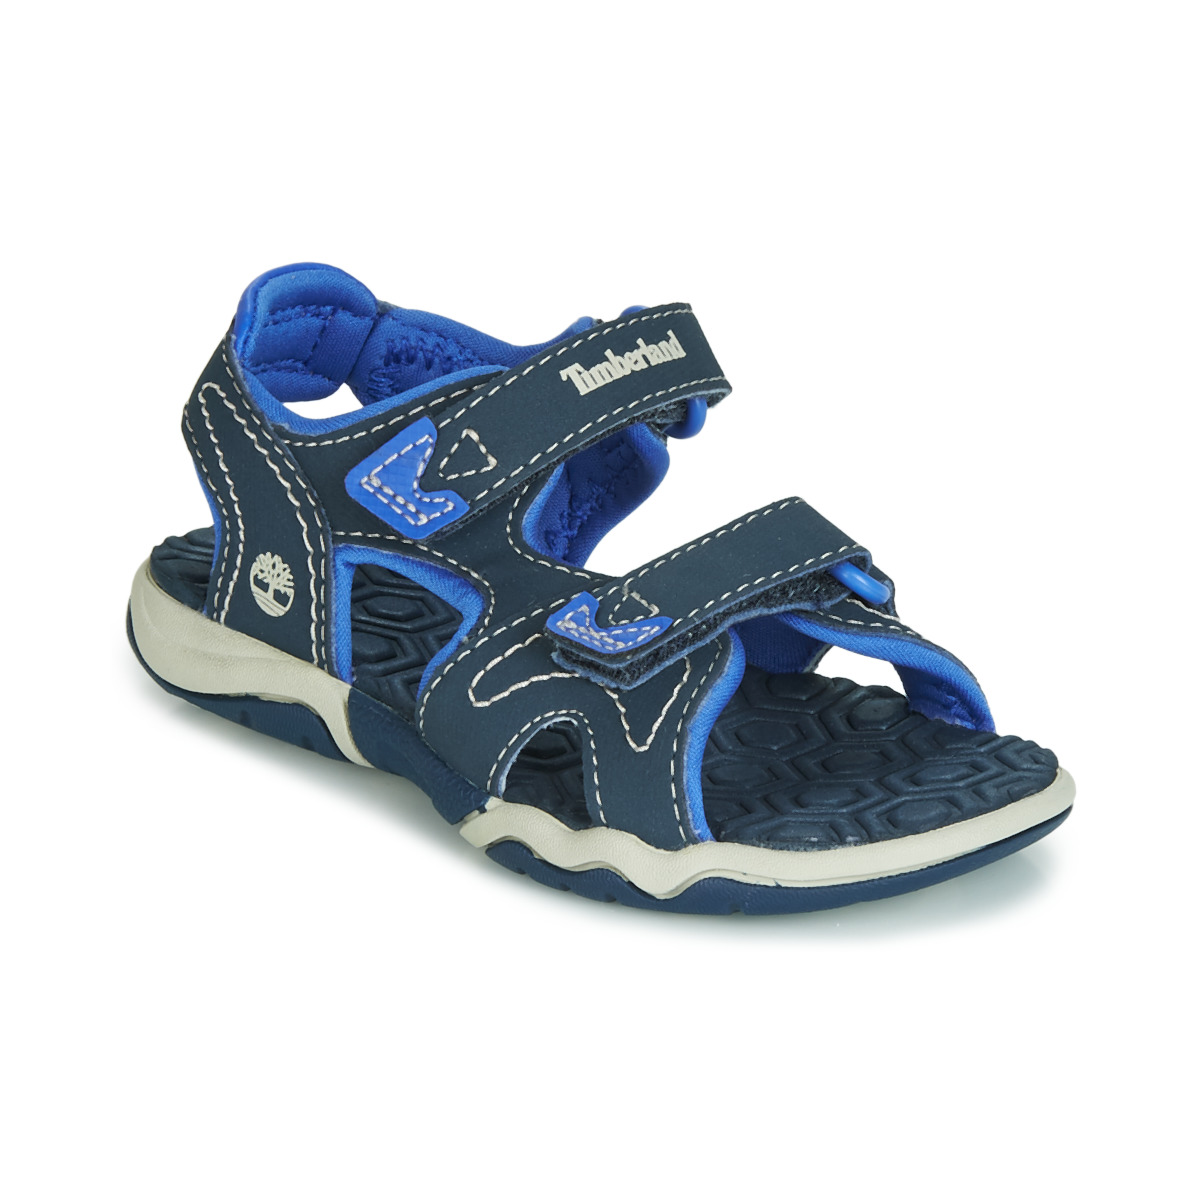 kengät Lapset Sandaalit ja avokkaat Timberland ADVENTURE SEEKER 2 STRAP Sininen